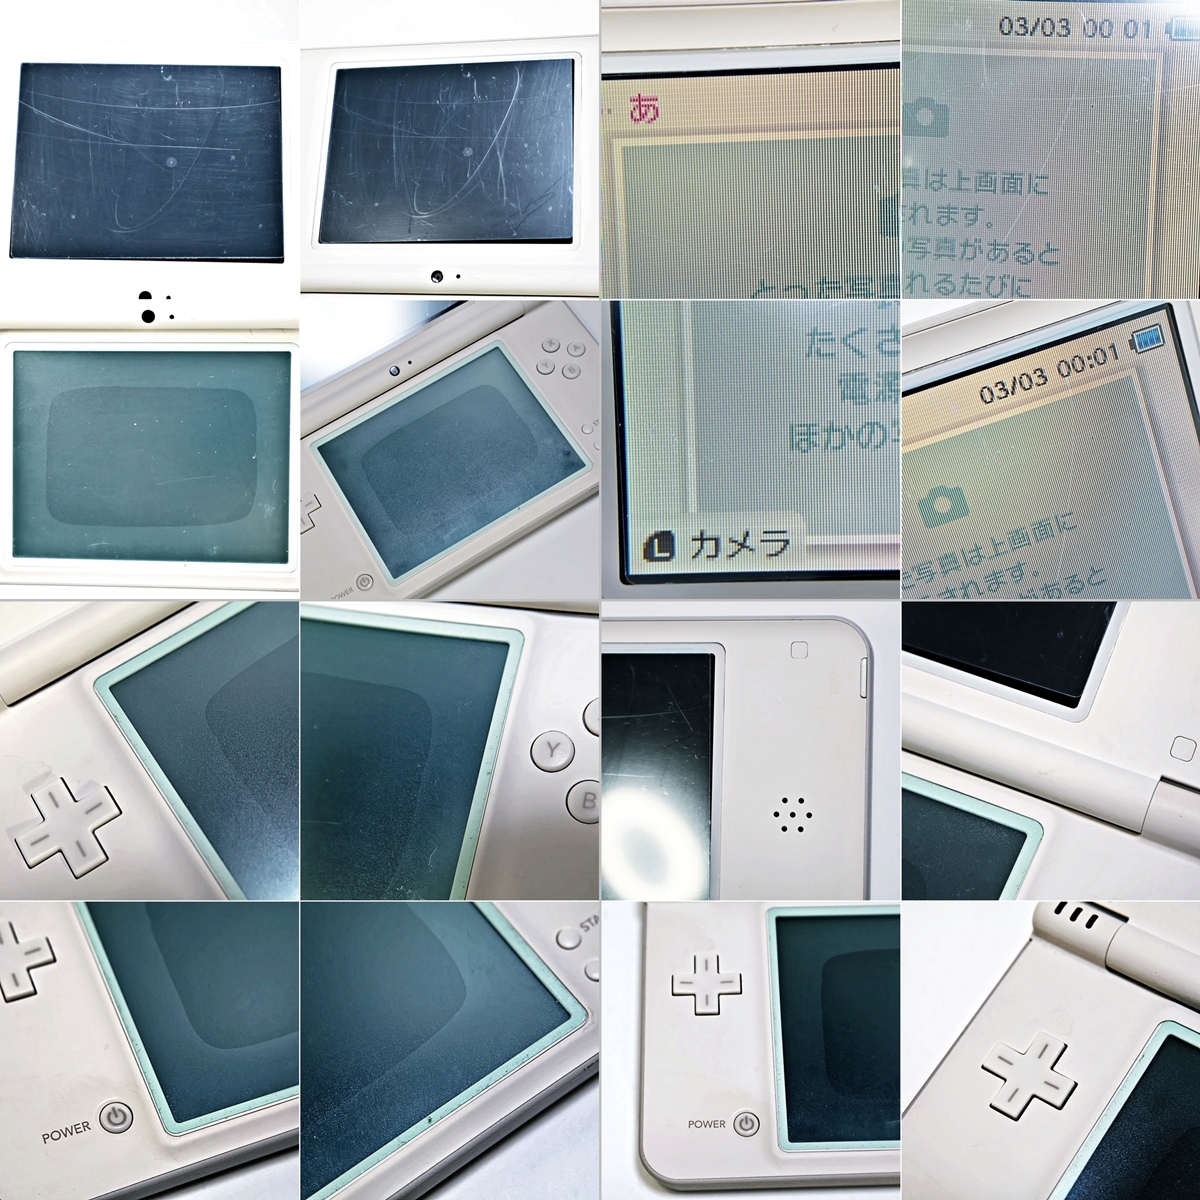 Nintendo DS i LL UTL-001 任天堂 ニンテンドー ナチュラルホワイト ゲーム機 本体 取扱説明書 箱付き 003FEZFI03_画像6